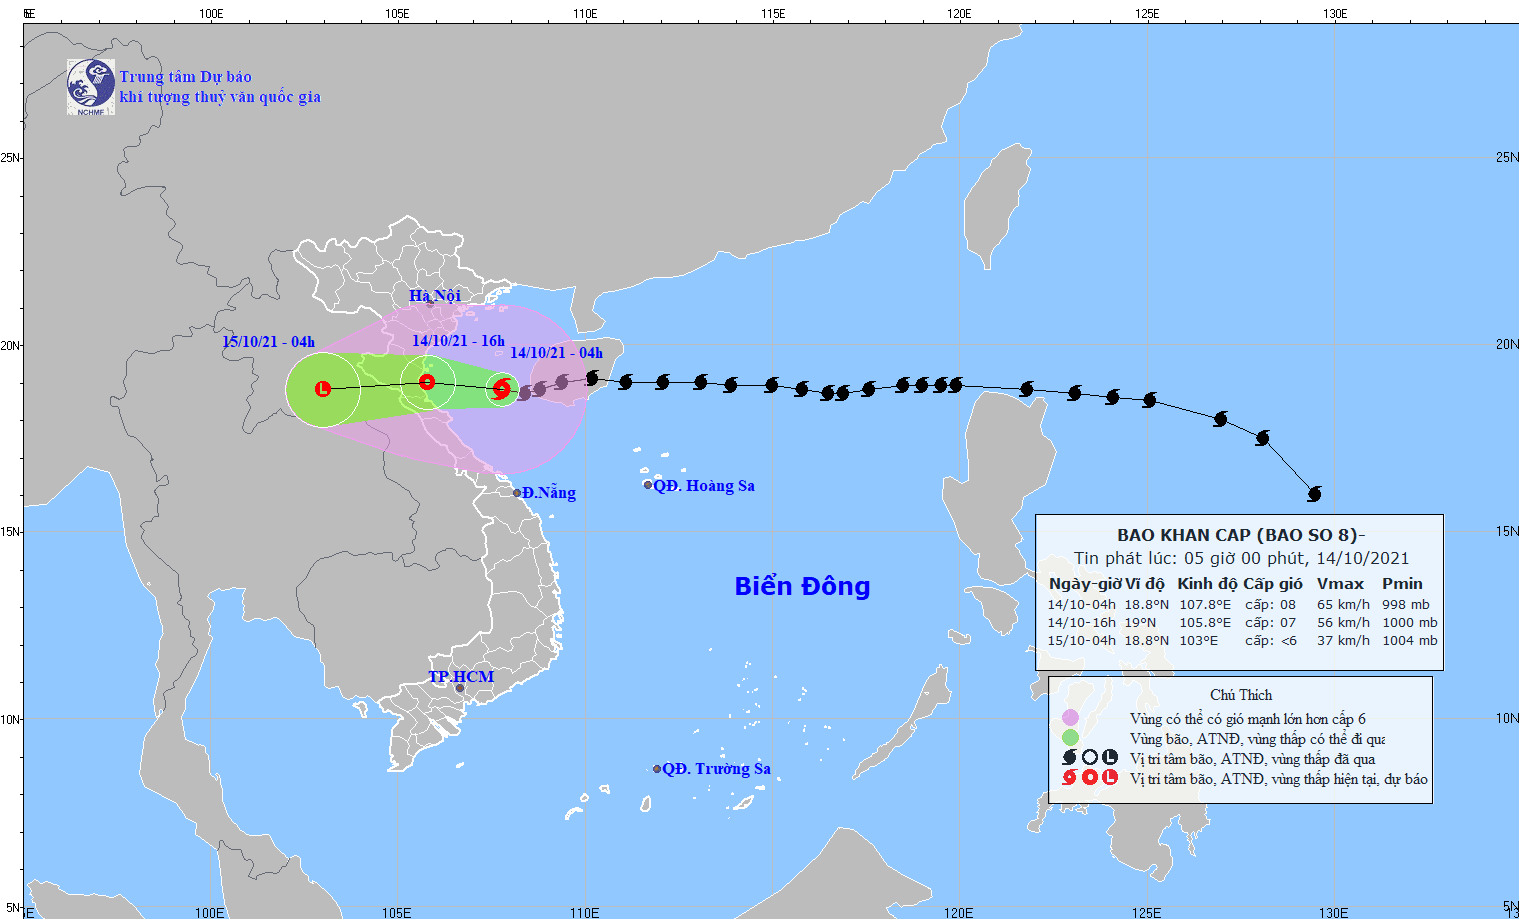 Bão số 8 đi vào Vịnh Bắc Bộ, vùng ven biển từ Quảng Ninh đến Quảng Bình gió giật cấp 9